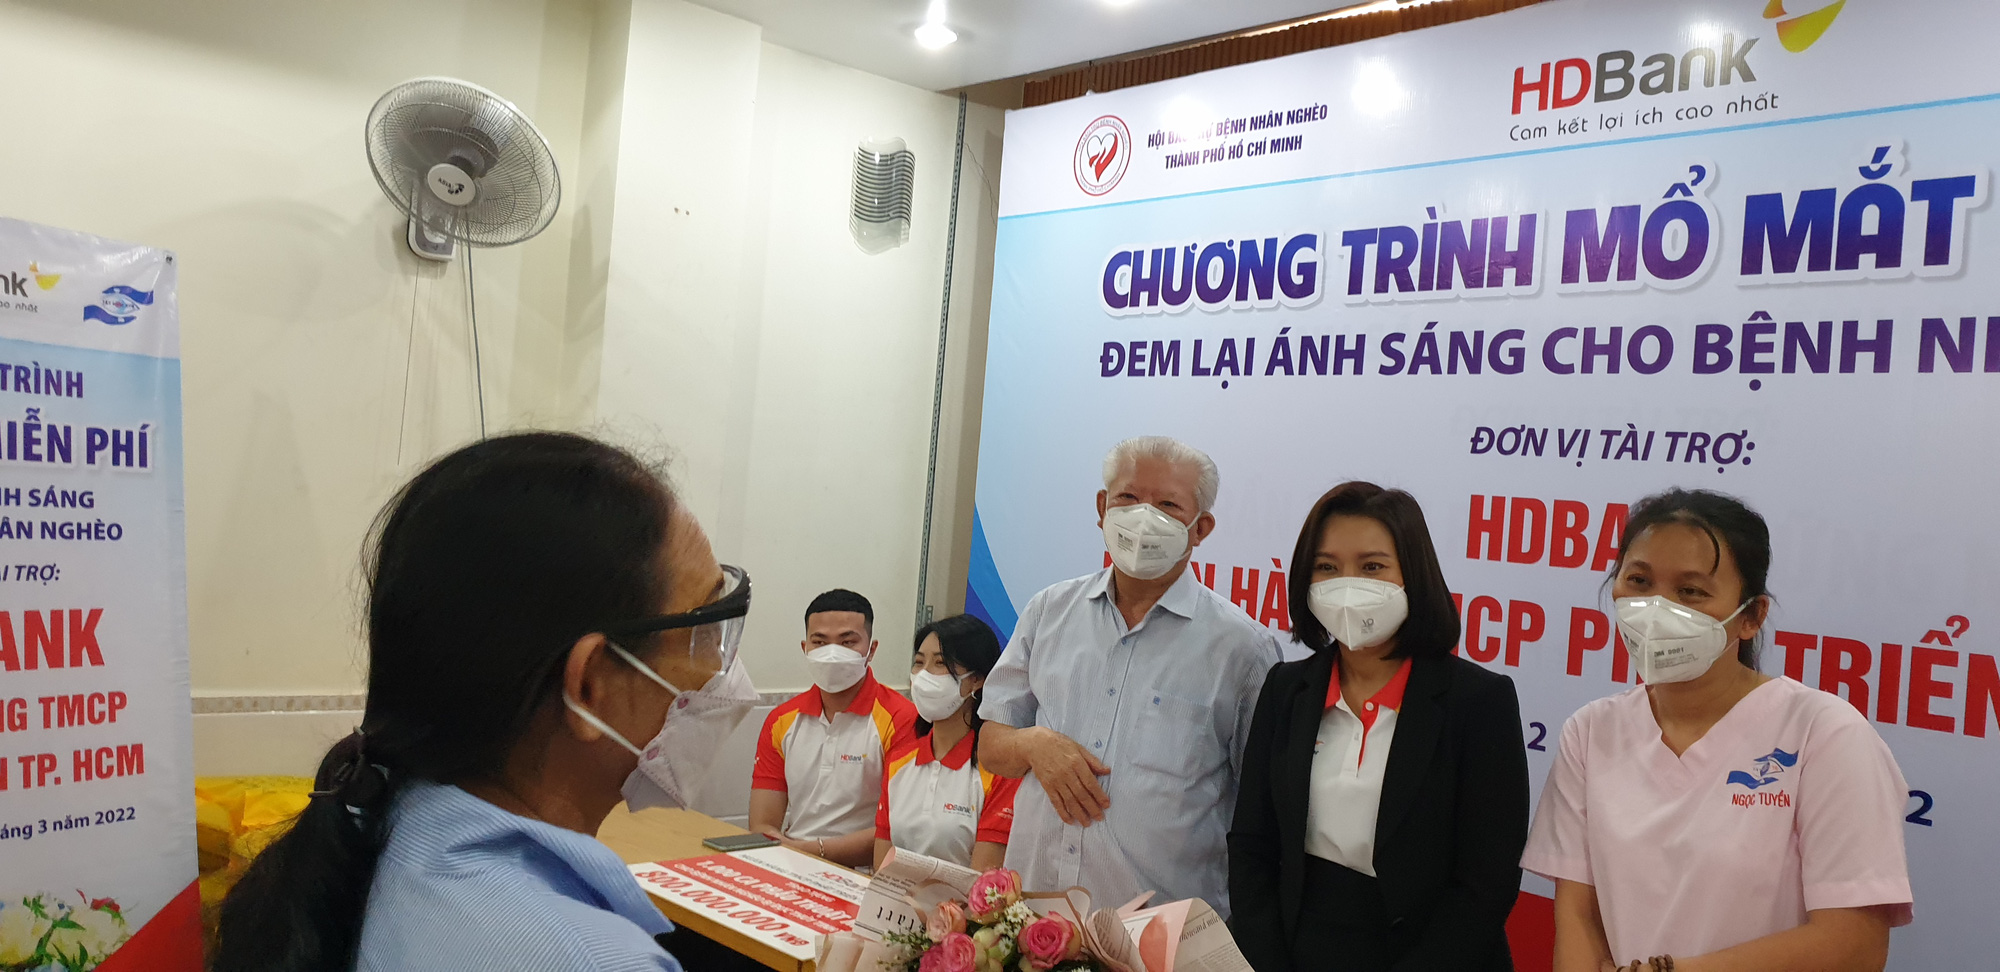 HDBank trao tặng 2.800 thẻ Bảo hiểm y tế và tài trợ 1.000 ca phẫu thuật mắt cho người dân - Ảnh 2.